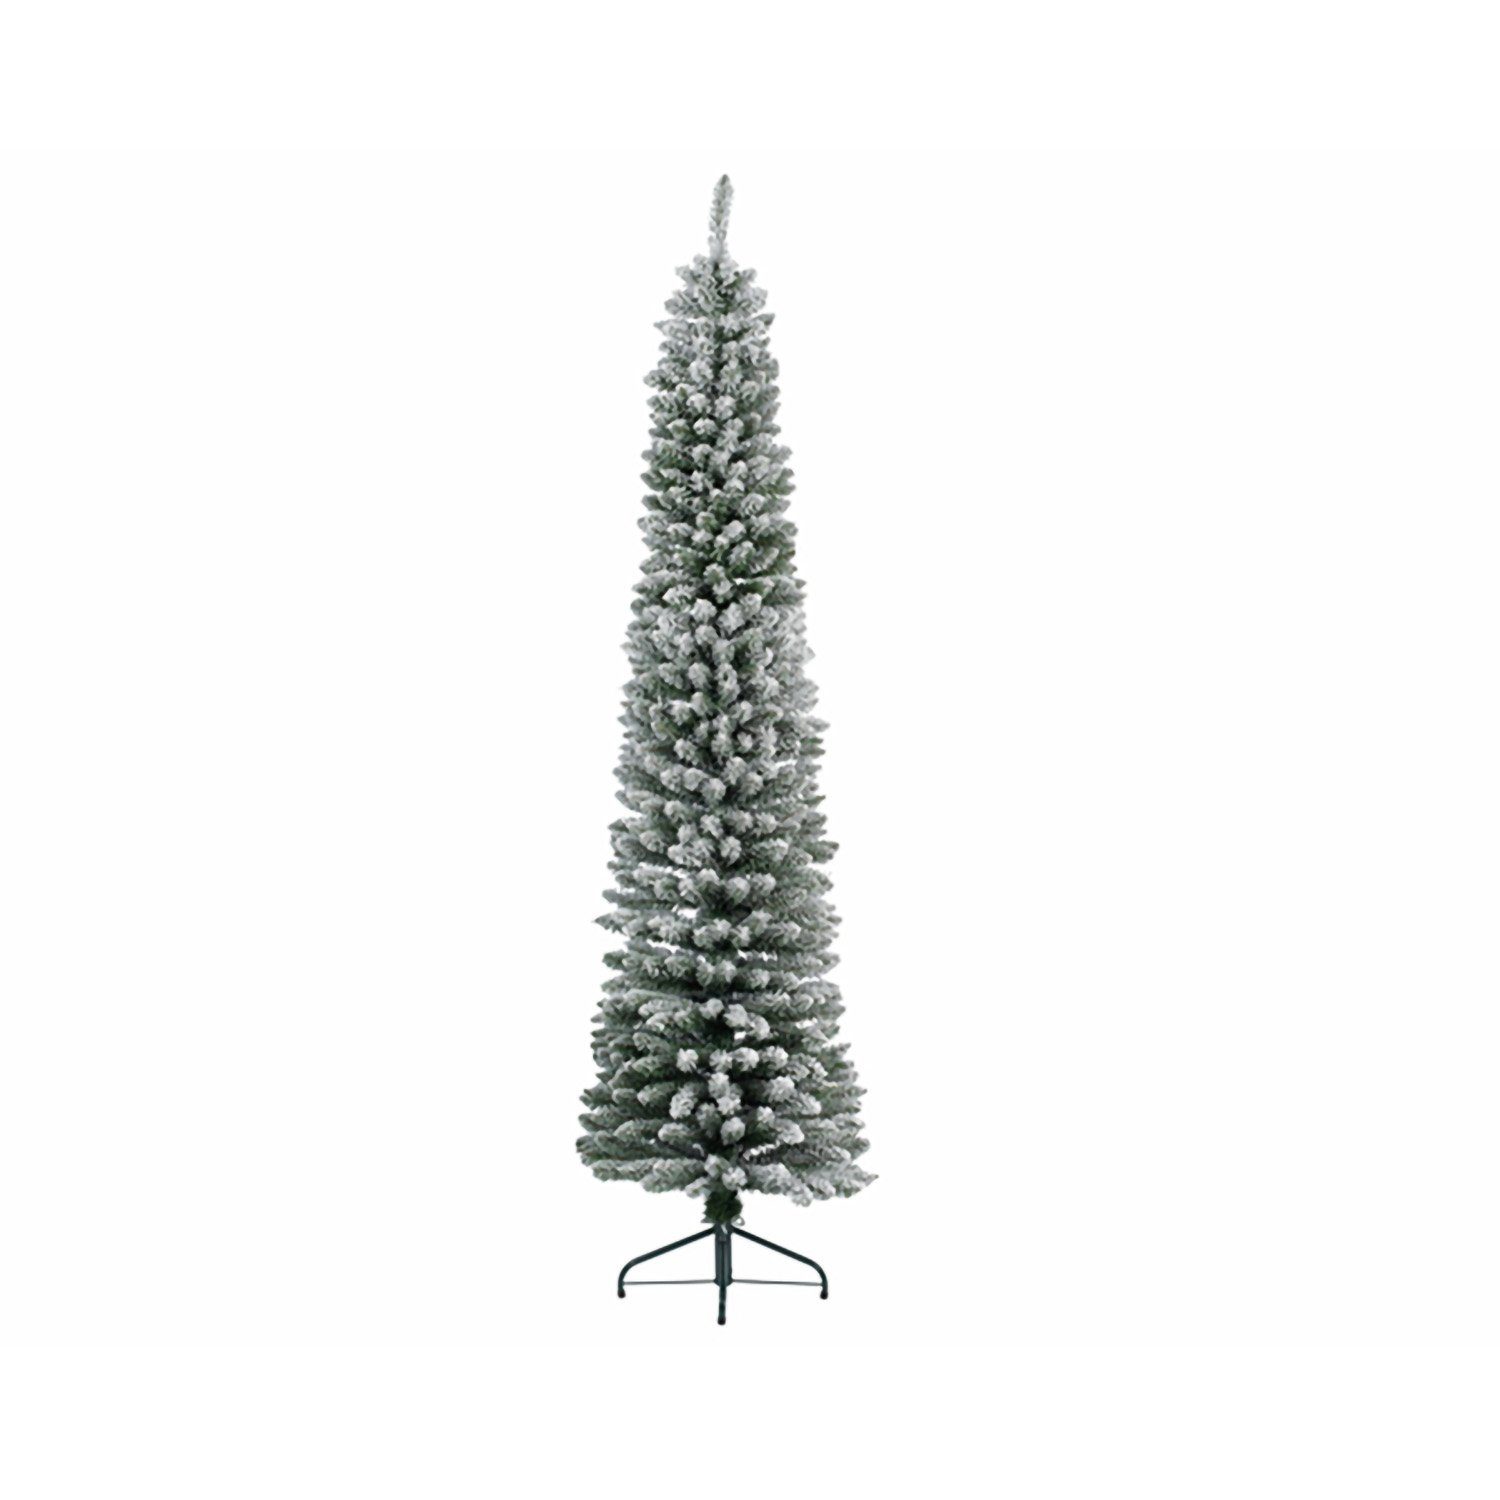 GILDE Künstlicher Weihnachtsbaum GILDE Deko Tannenbaum beschneit - grün-weiß - H. 240cm x D. 70cm